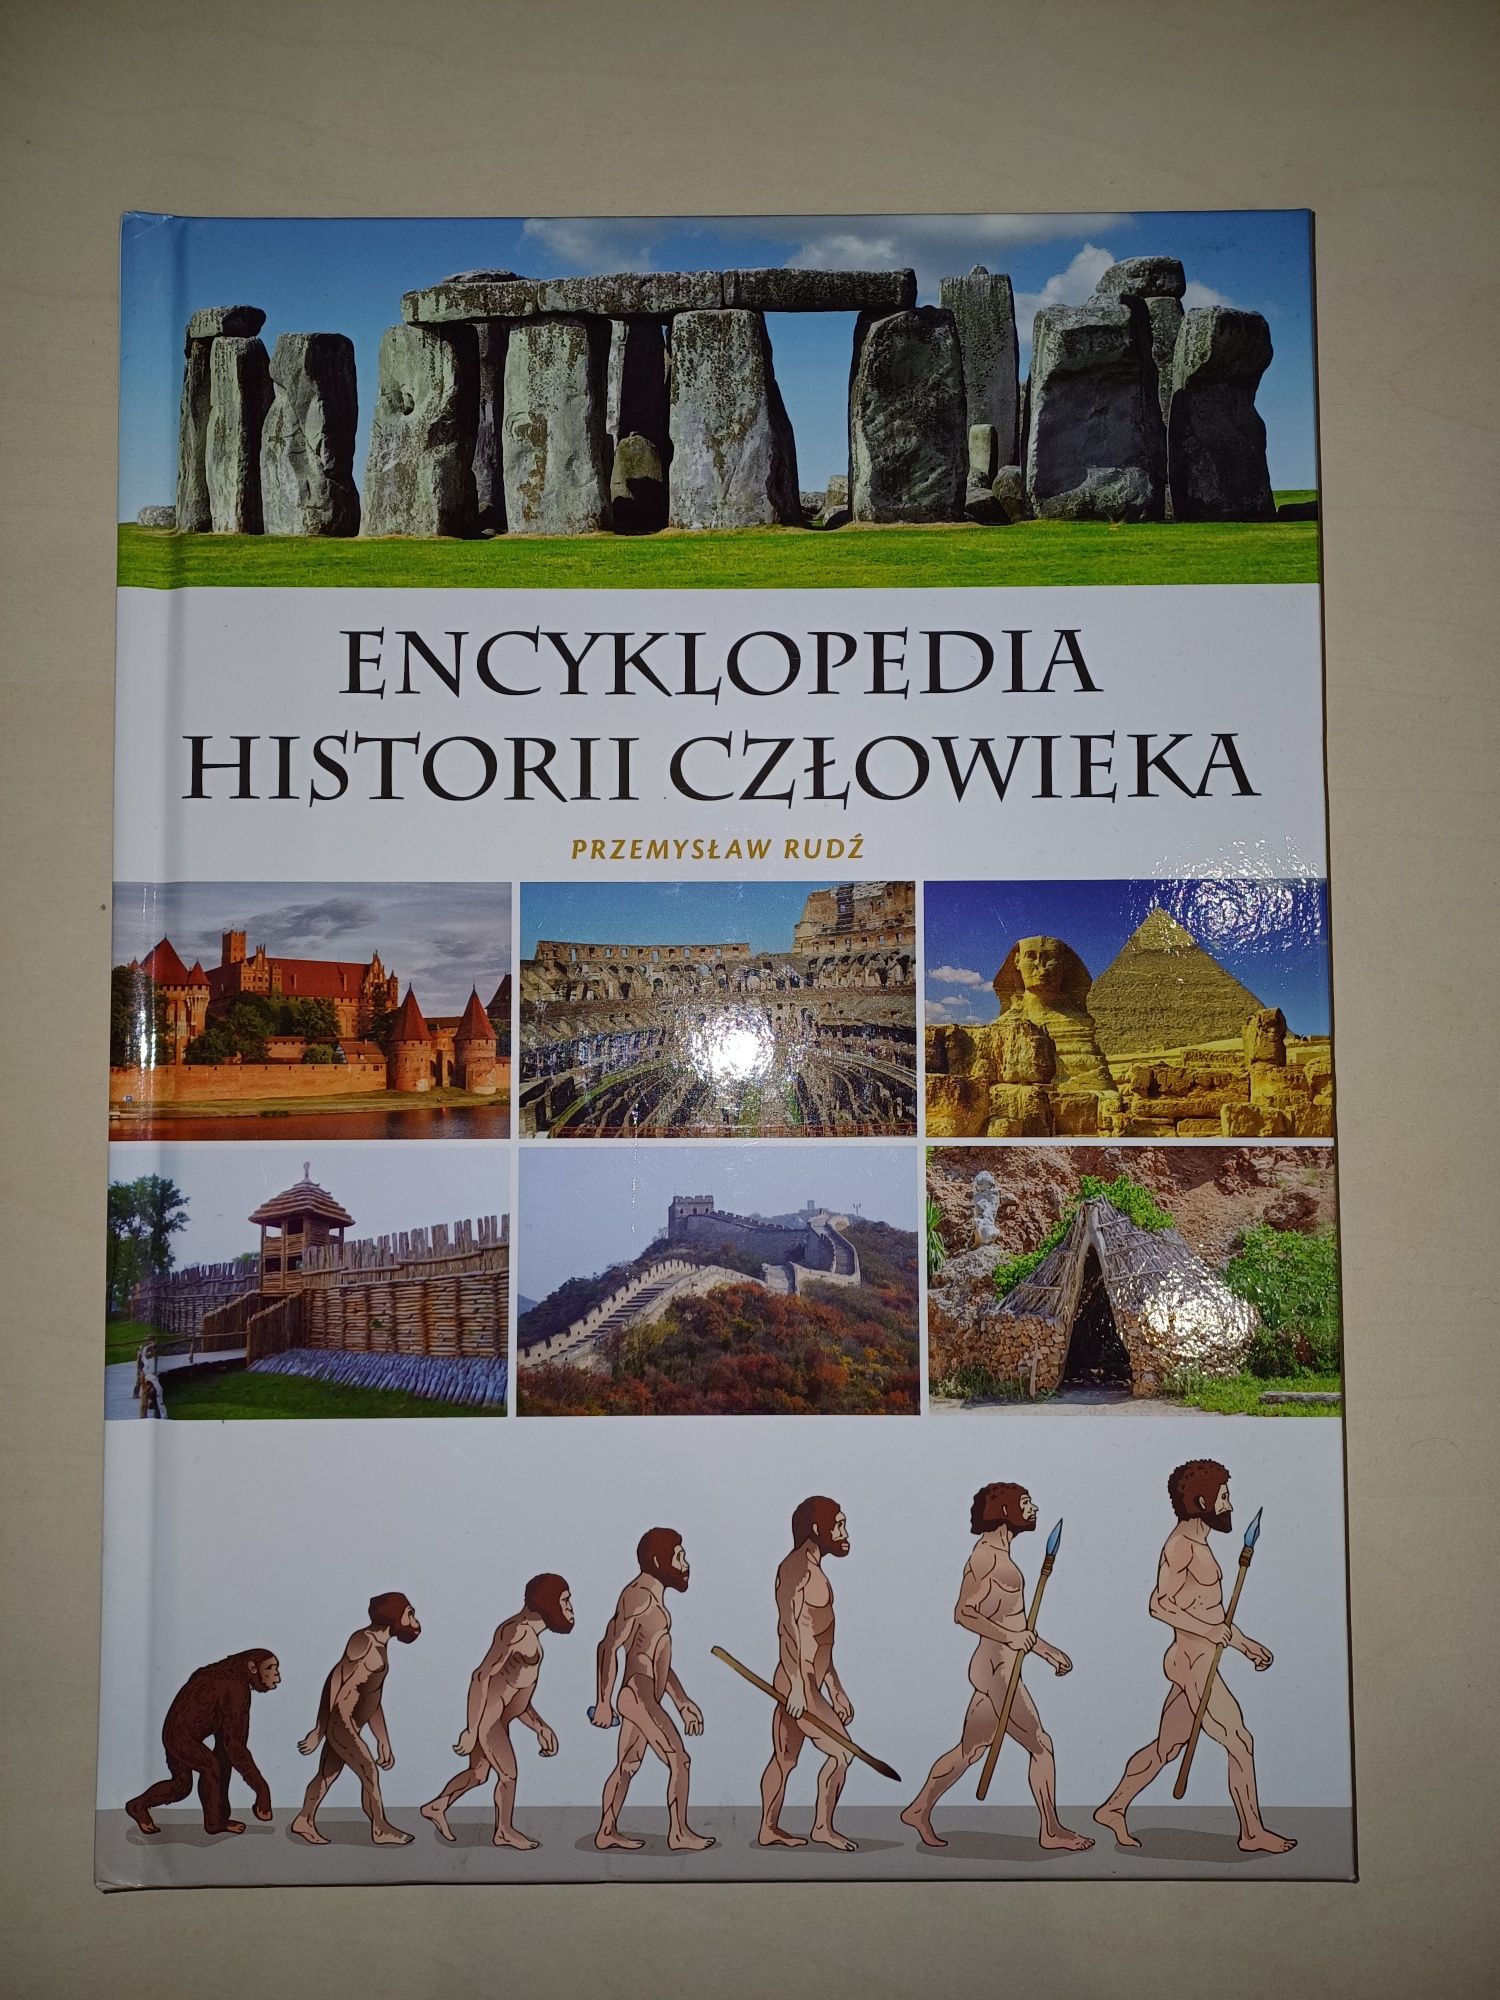 Encyklopedia Histrorii Człowieka - Przemysław Rudź